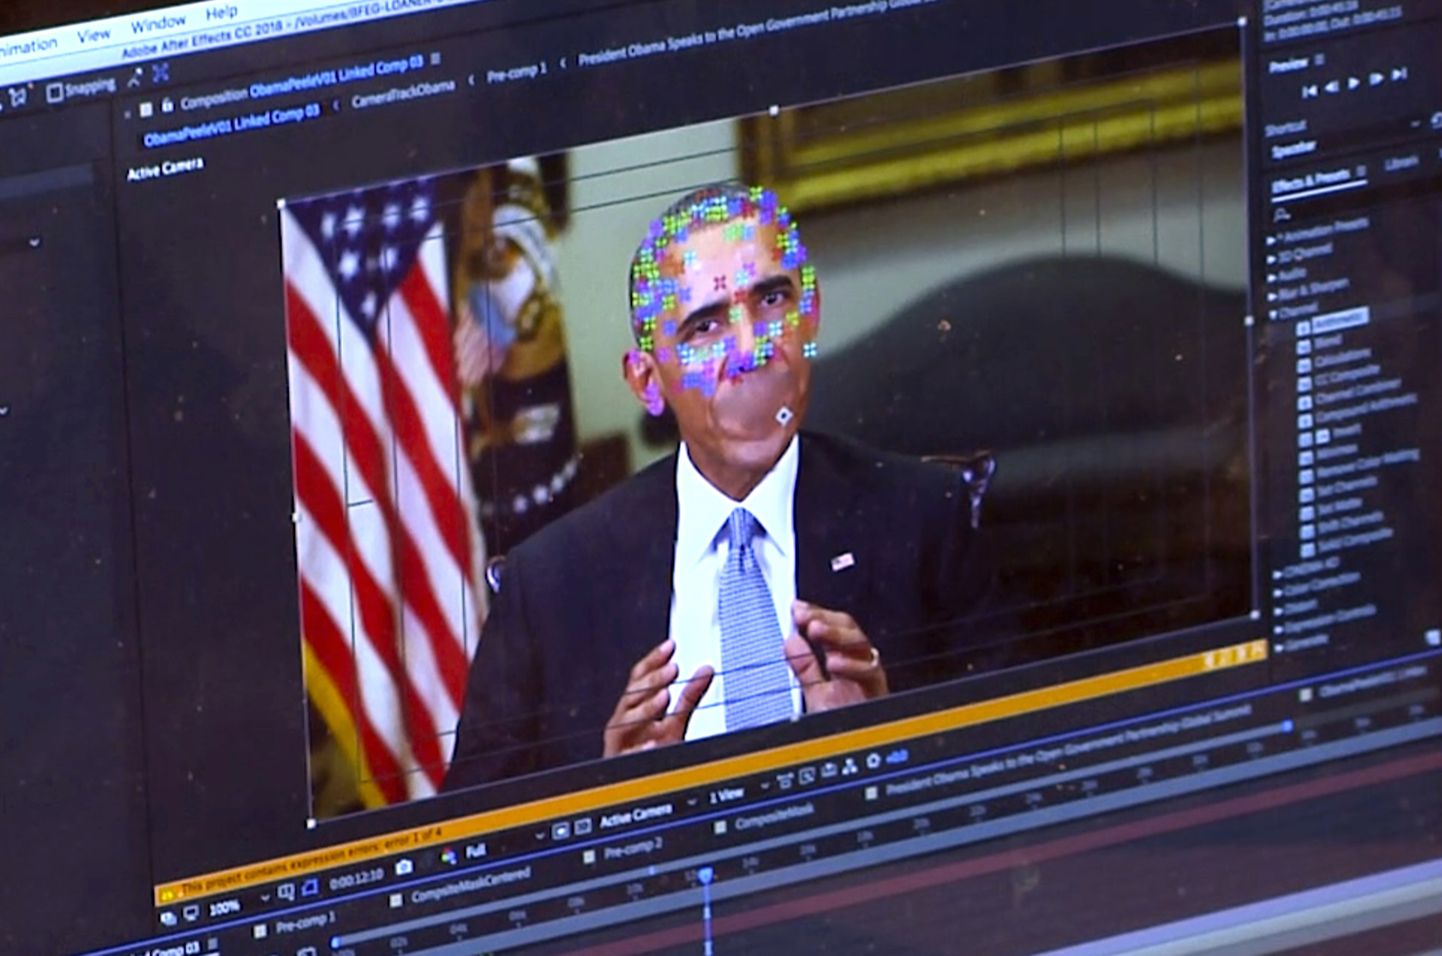 Pilt sellest, kuidas endisest USA presidendist Barack Obamast süvavõltsingut tehakse. Pildil on näha elemente näo kaardistamisest uue tehnoloogiaga, mis lubab igaühel teha videosid päris inimestest ütlemas asju, mida nad pole kunagi öelnud.